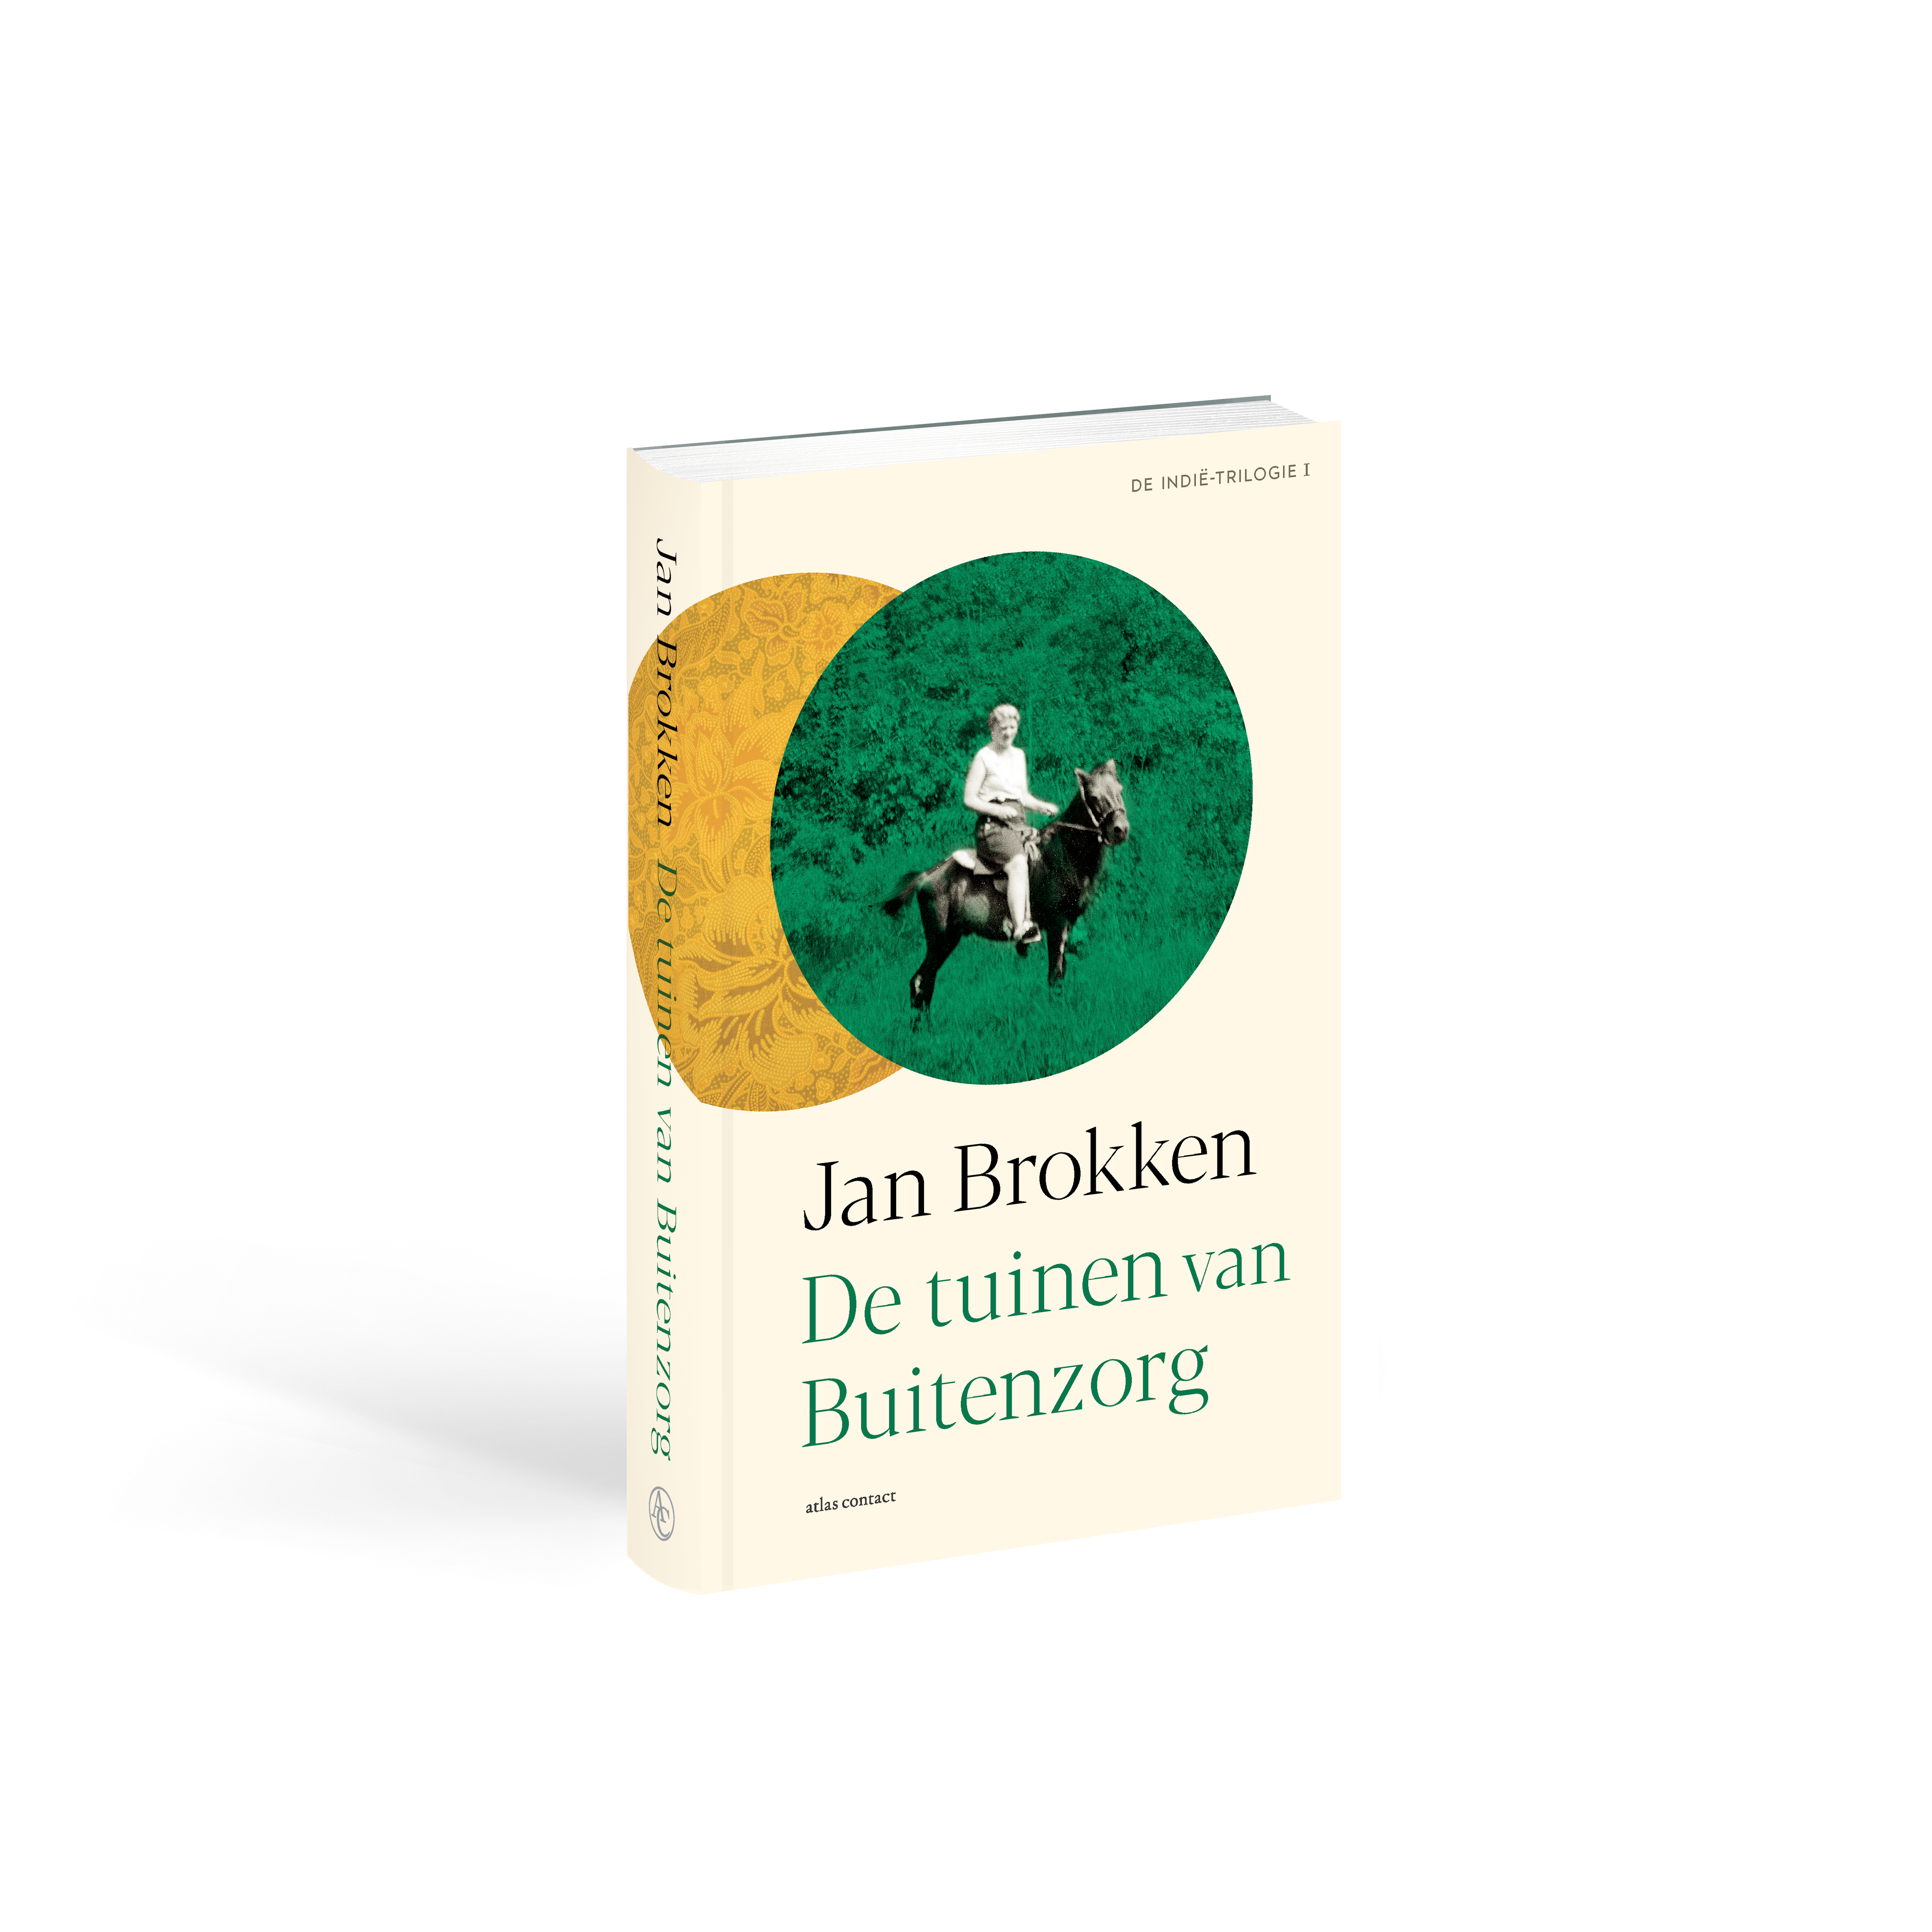 Jan Brokken (tekst) en Tobias Borsboom (piano) De tuinen van Buitenzorg in Kumpulan Bronbeek